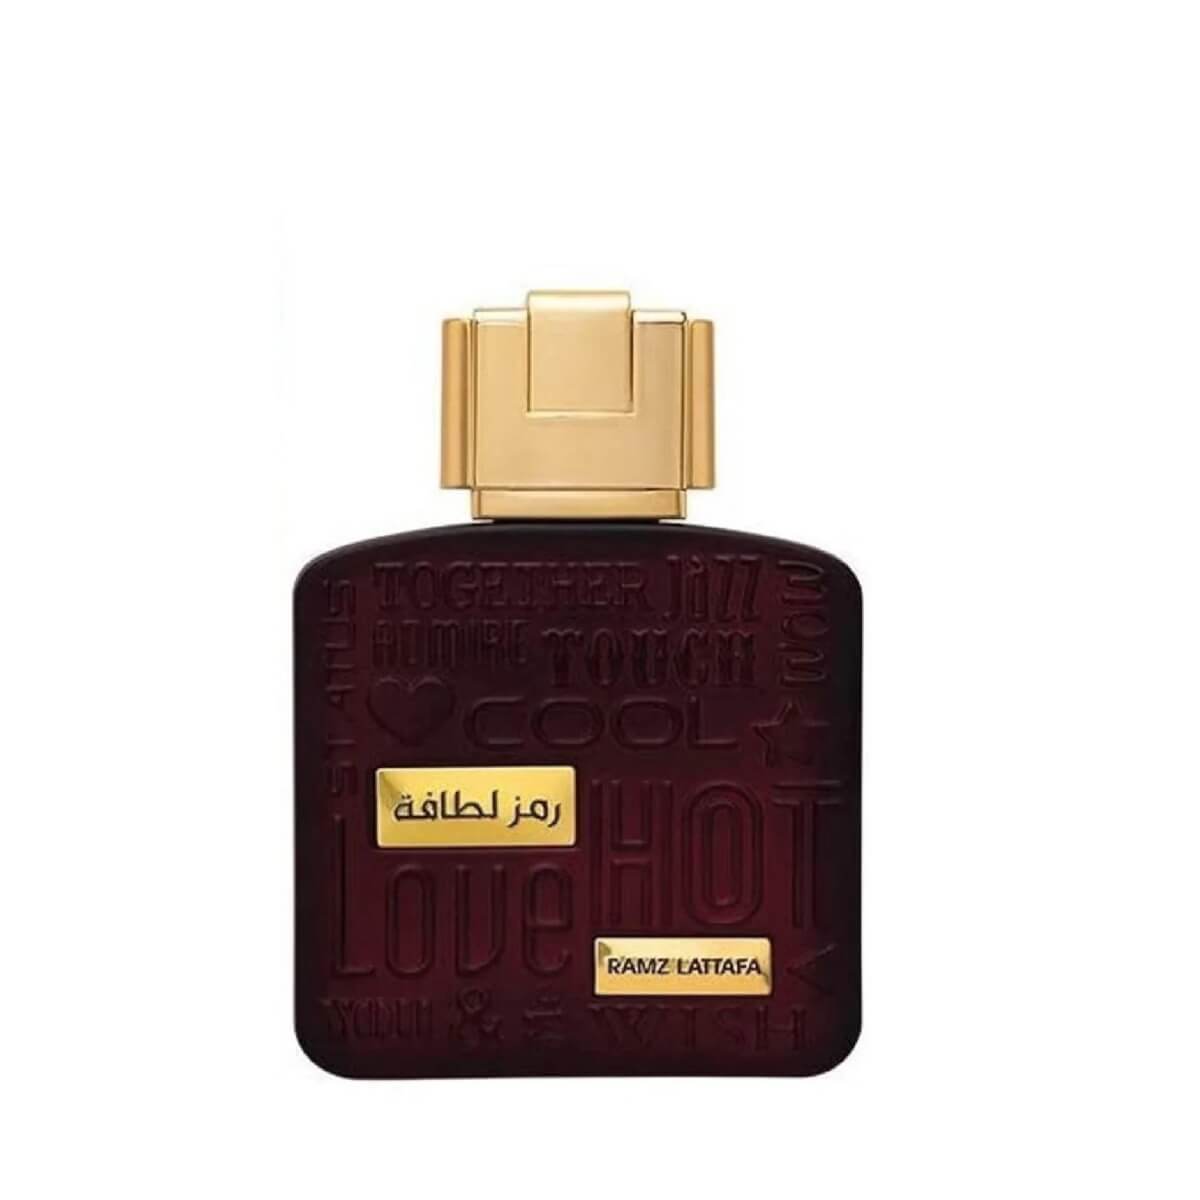 Ramz Lattafa Gold Perfume / Eau De Parfum 100Ml By Lattafa (Inspired By Xerjoff Alexandria Ii)